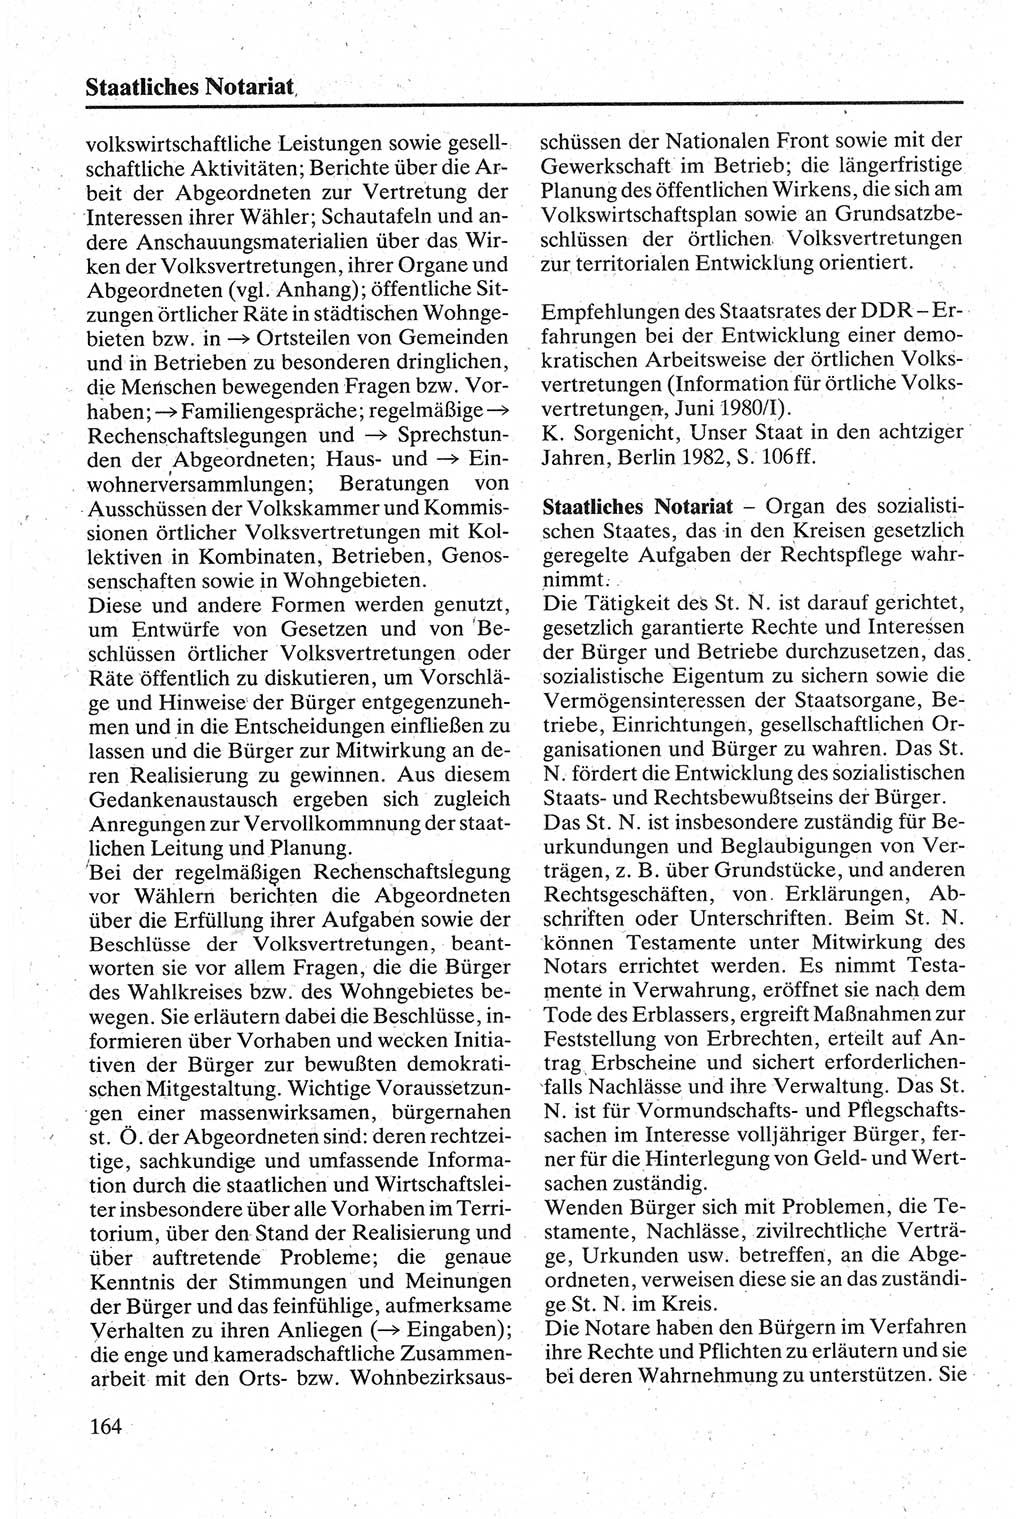 Handbuch für den Abgeordneten [Deutsche Demokratische Republik (DDR)] 1984, Seite 164 (Hb. Abg. DDR 1984, S. 164)